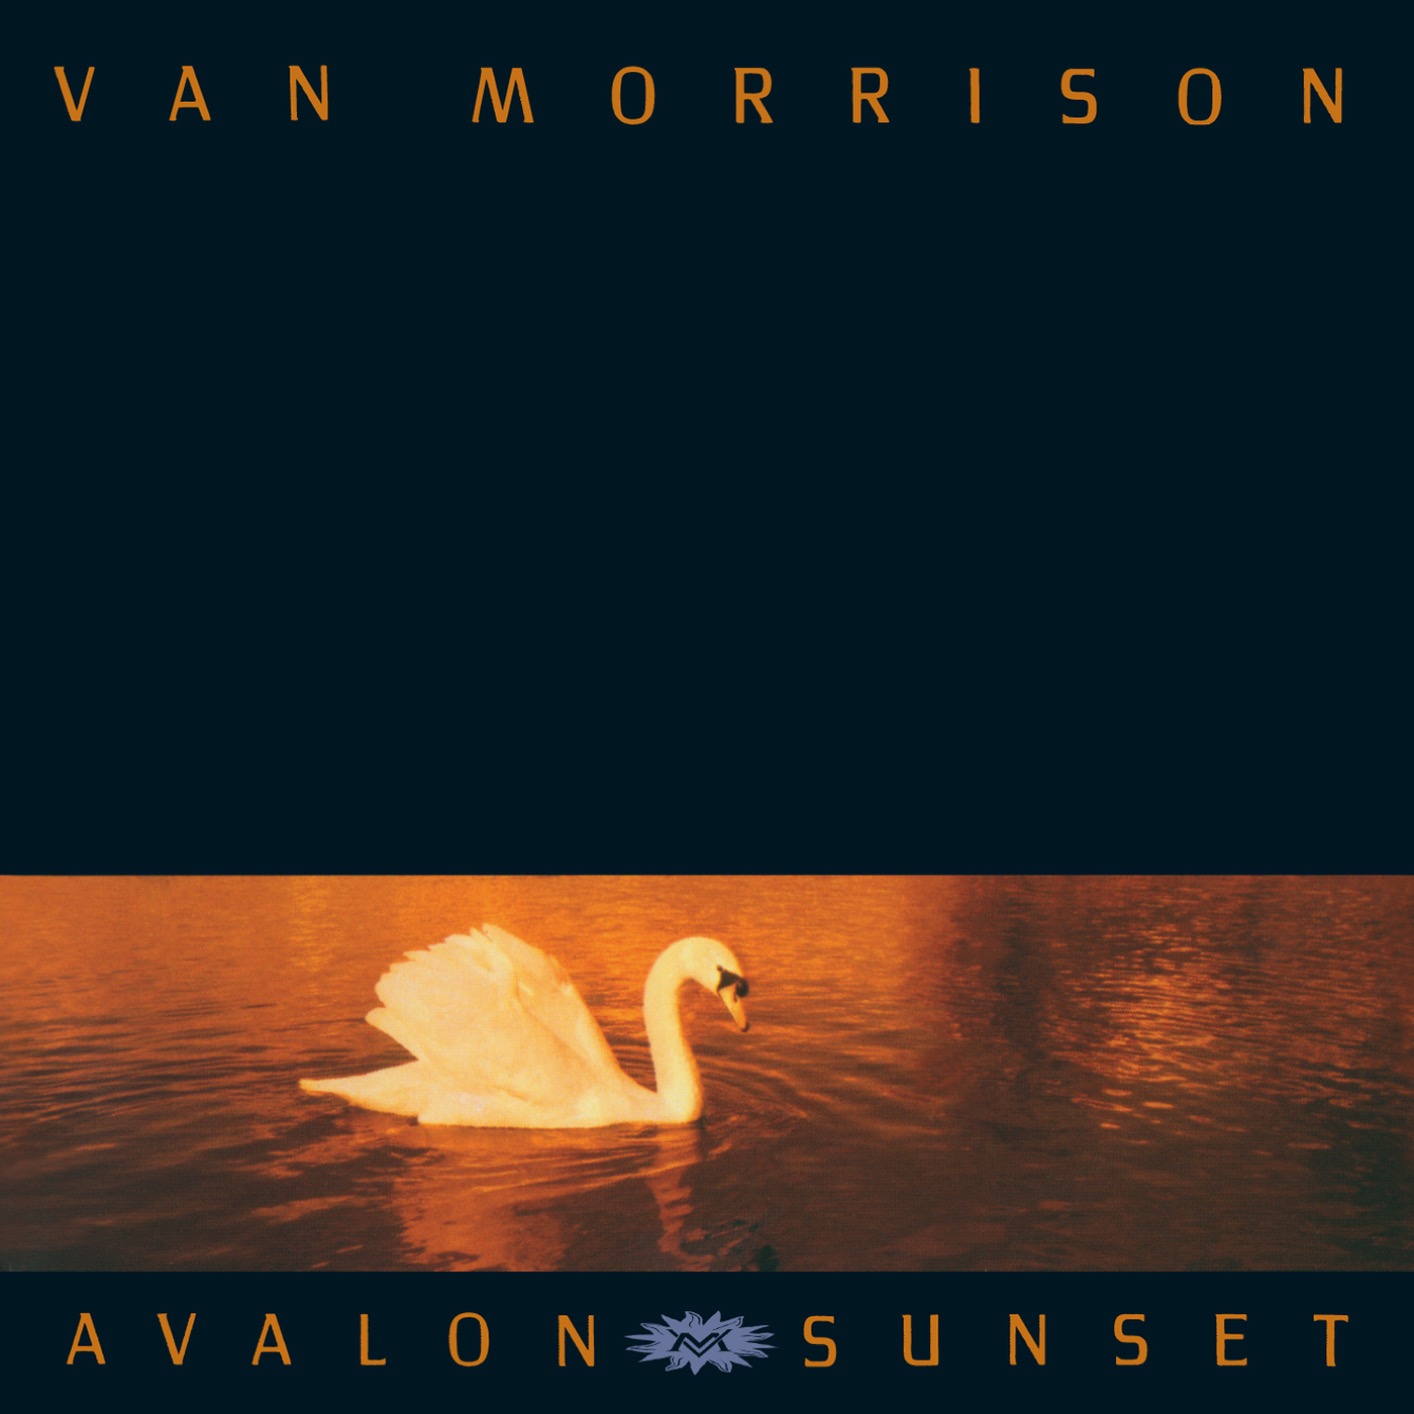 Van Morrison - Avalon Sunset (Remastered) (1989/2020) [FLAC 24bit/96kHz]